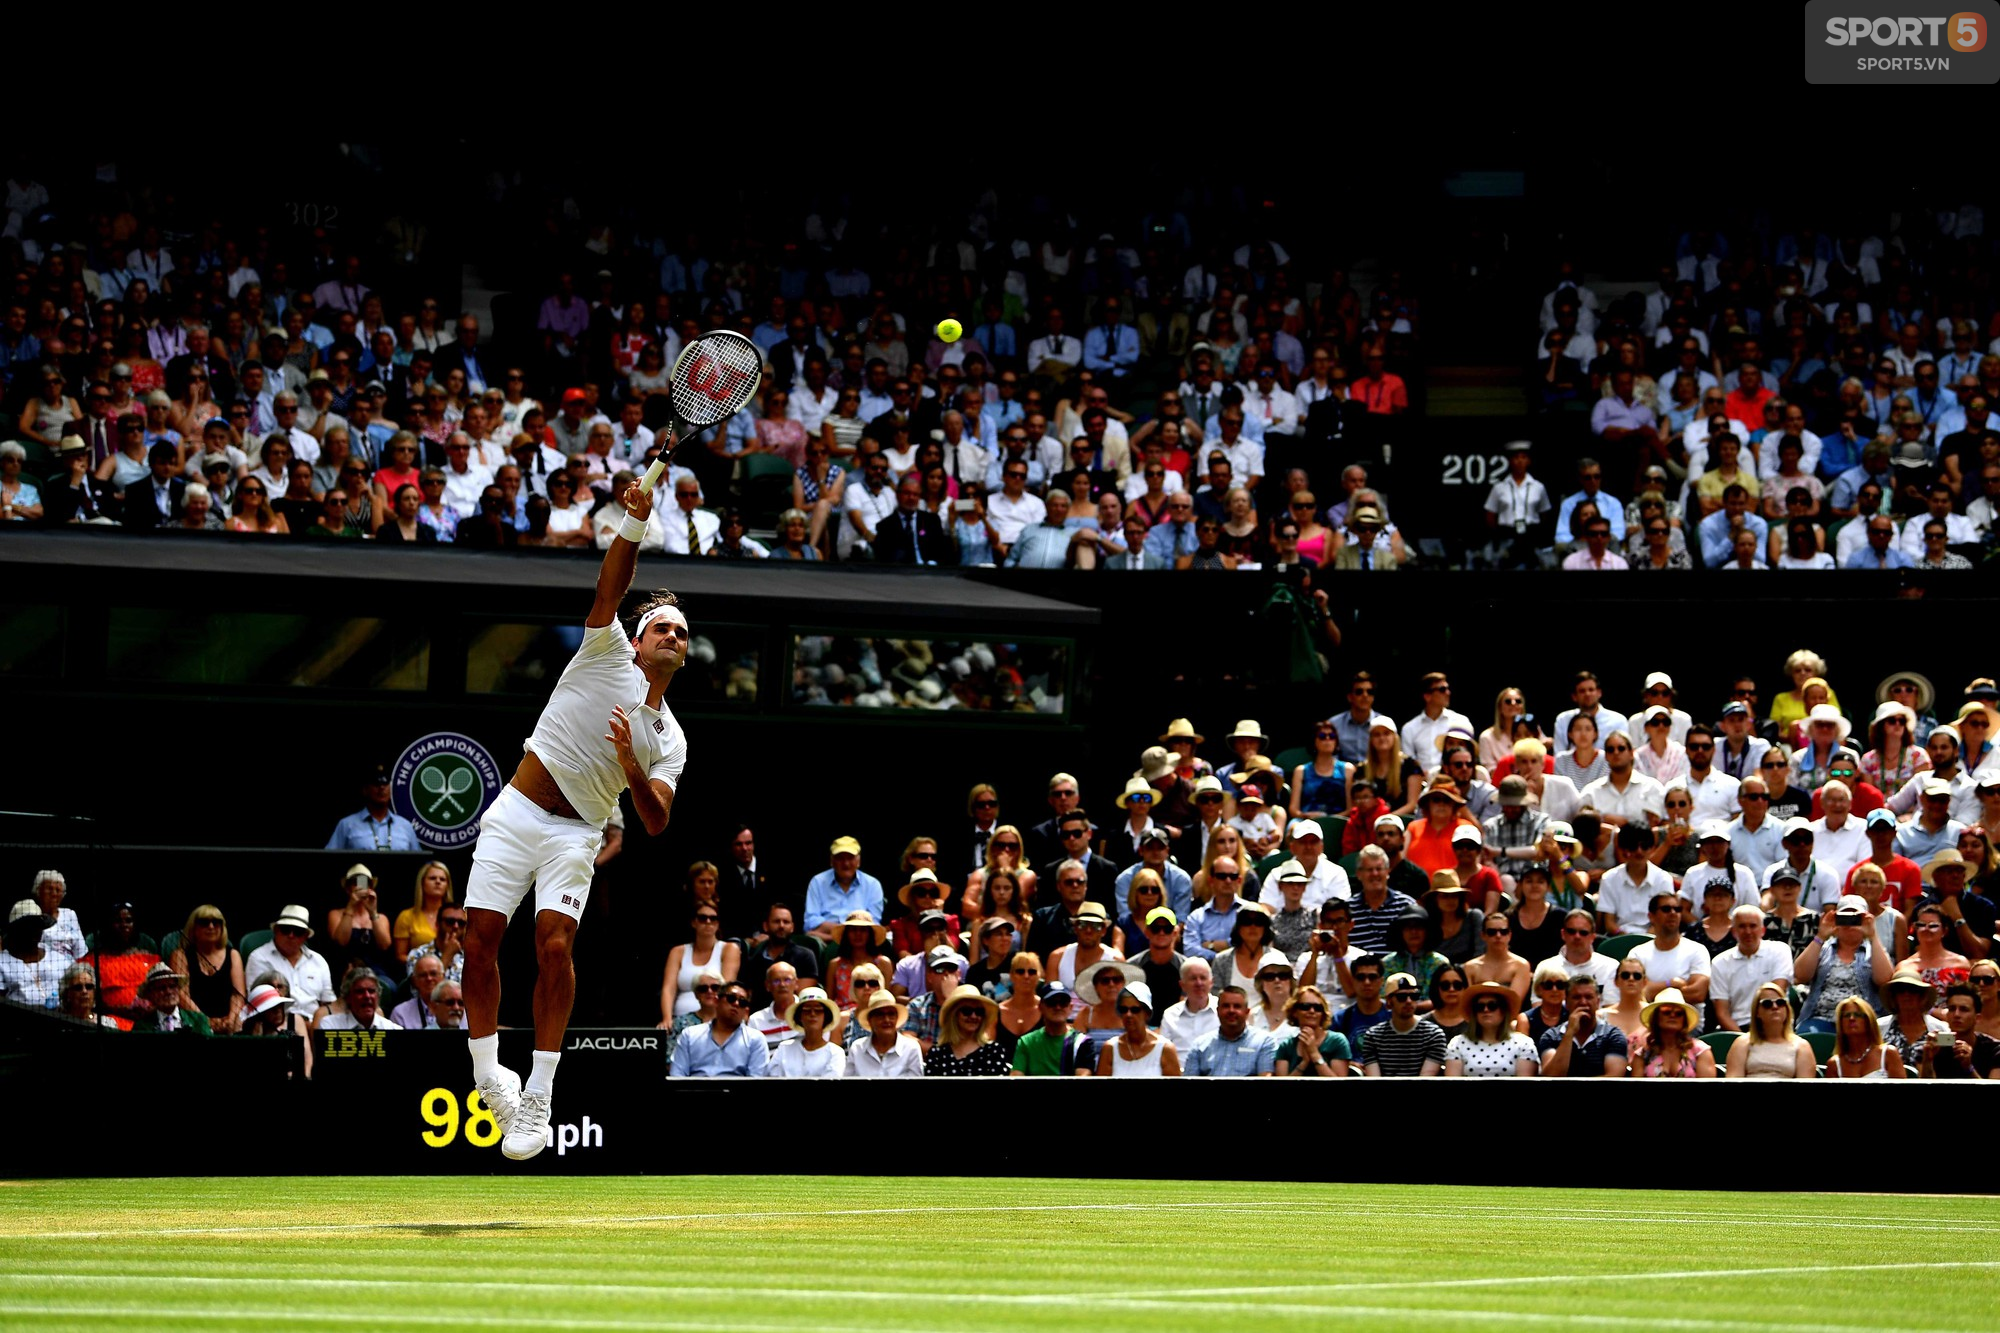 Nhận sự ủng hộ to lớn trên khán đài, Federer lần thứ 16 vào tứ kết Wimbledon - Ảnh 2.